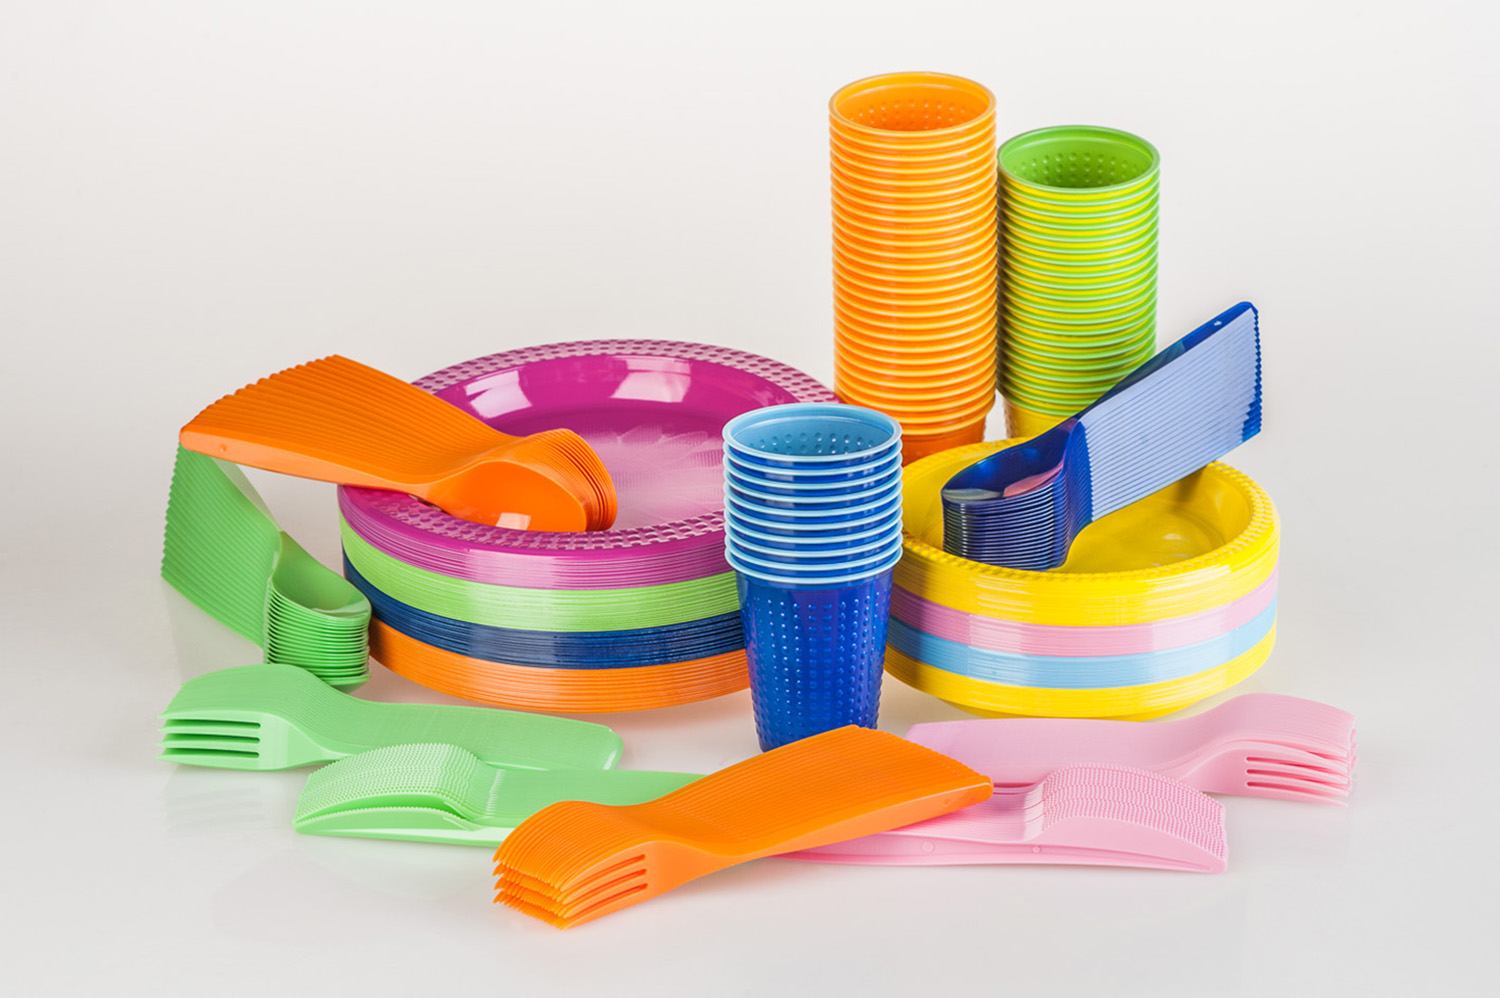 Изделия хозяйственного назначения. Пластиковая посуда. Посуда одноразовая пластиковая. Пластиковая посуда многоразовая. Пластиковые изделия для детей.